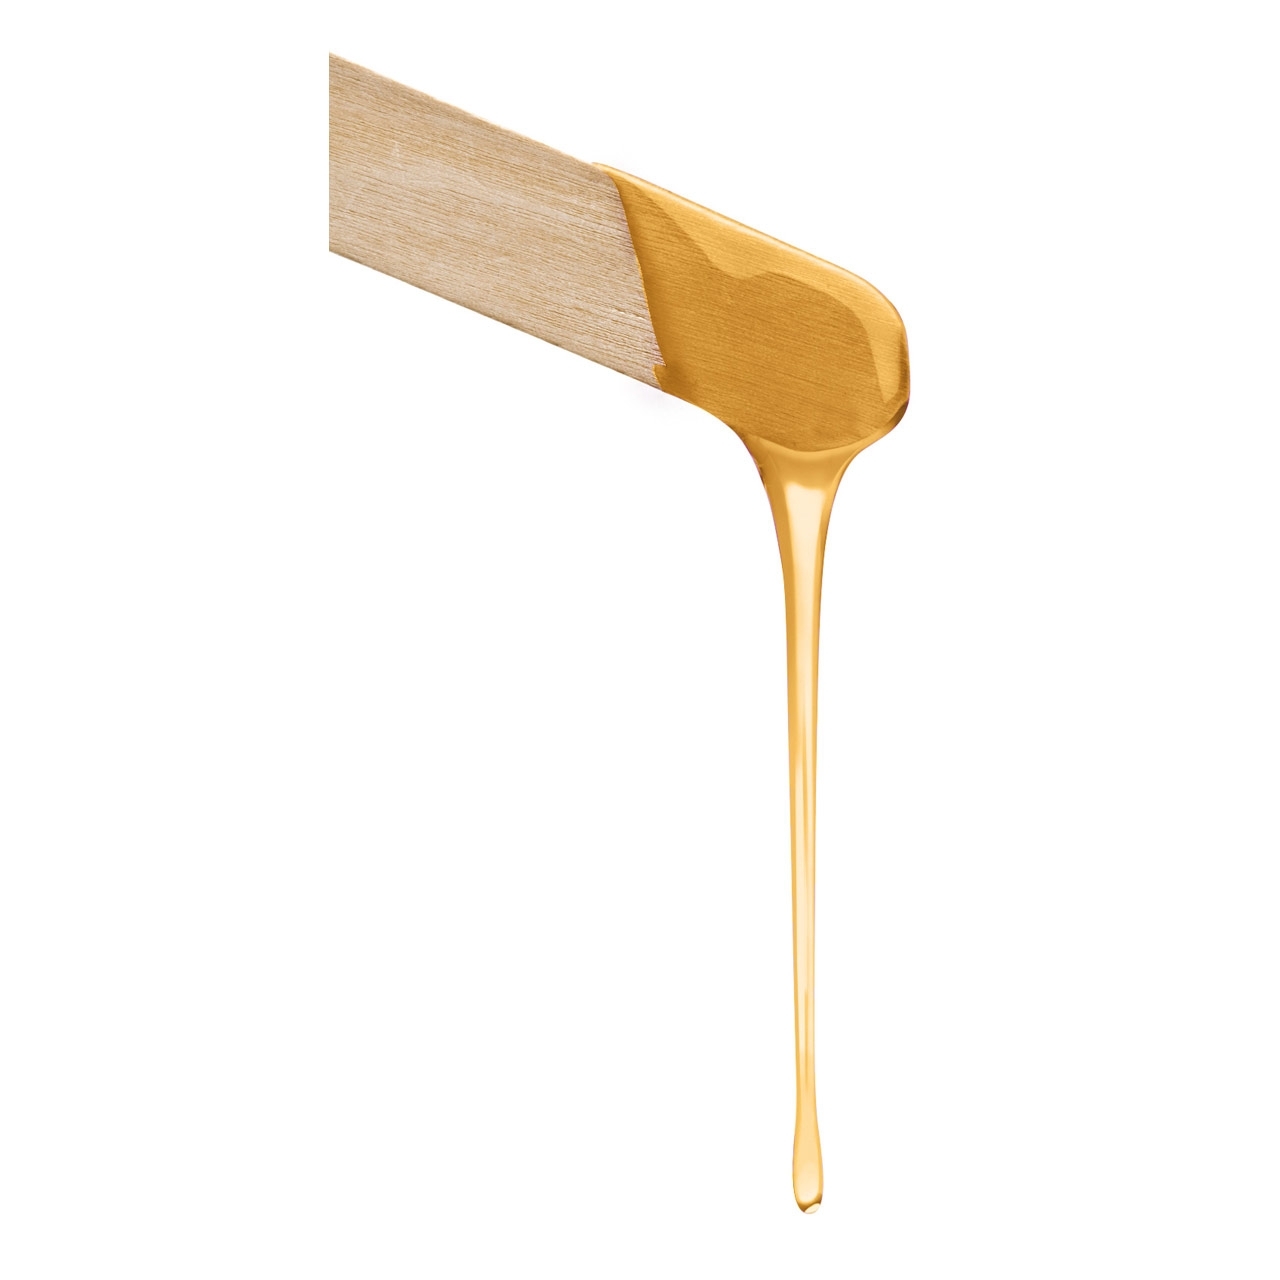 Baehr Wachspatrone Body "Honey" normale Haut mit Rollaufsatz groß 100 ml